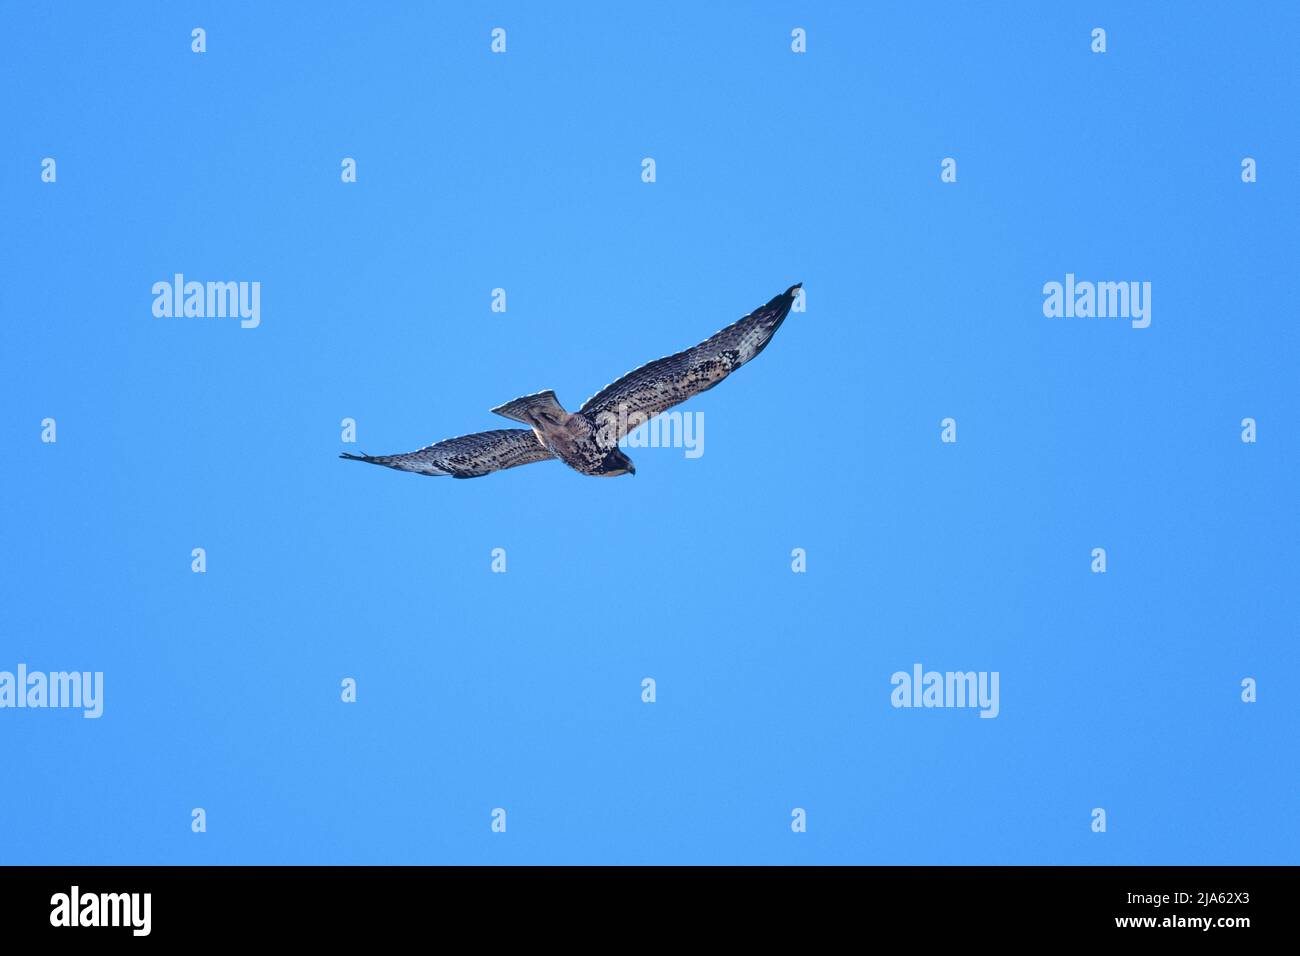 A hawk in flight Stock Photo